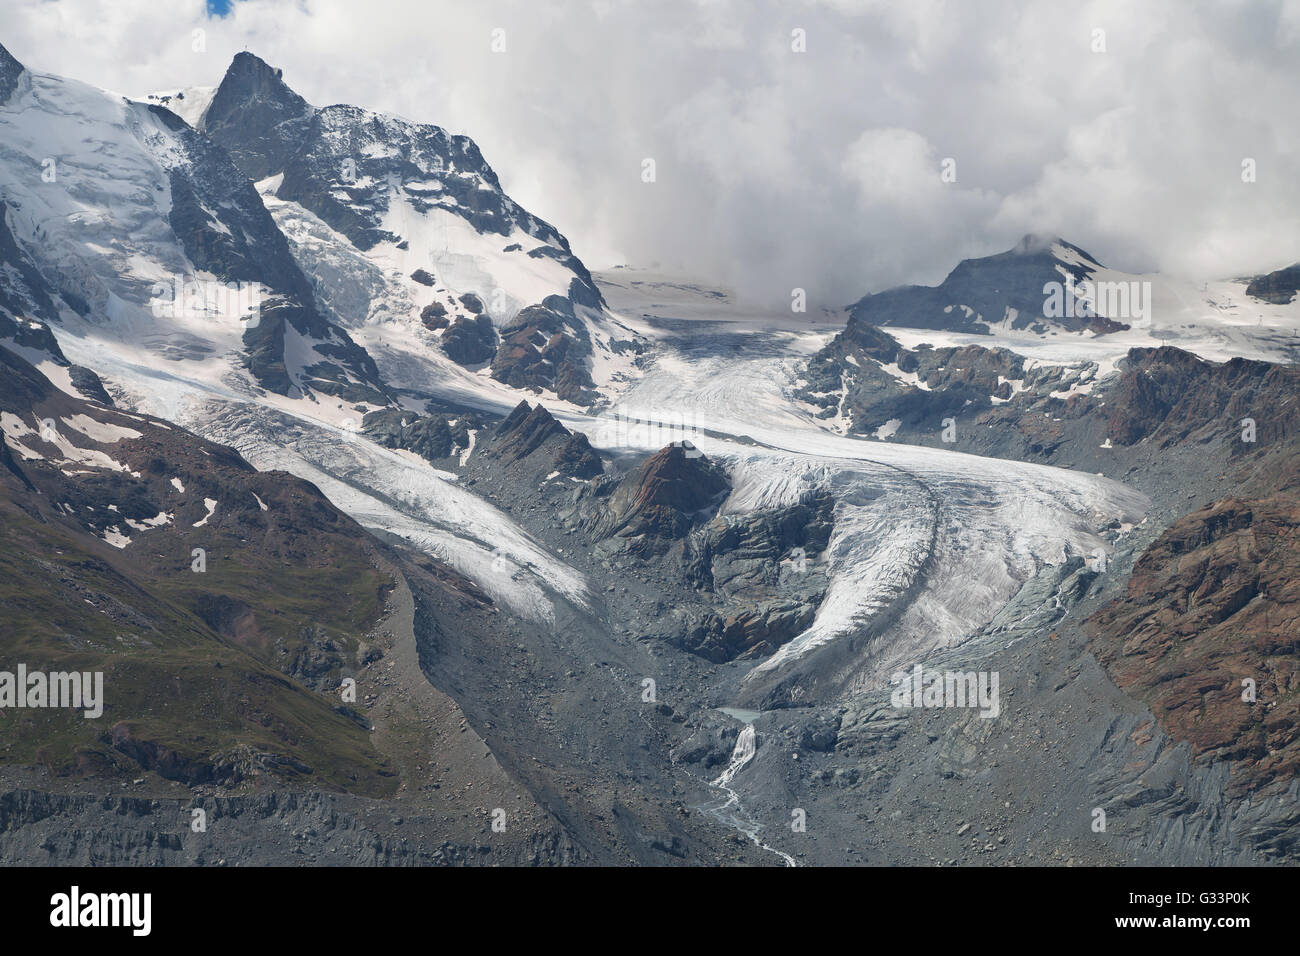 Klein Matterhorn and Theodul Glacier from Gornergrat, Swiss Alps. Stock Photo